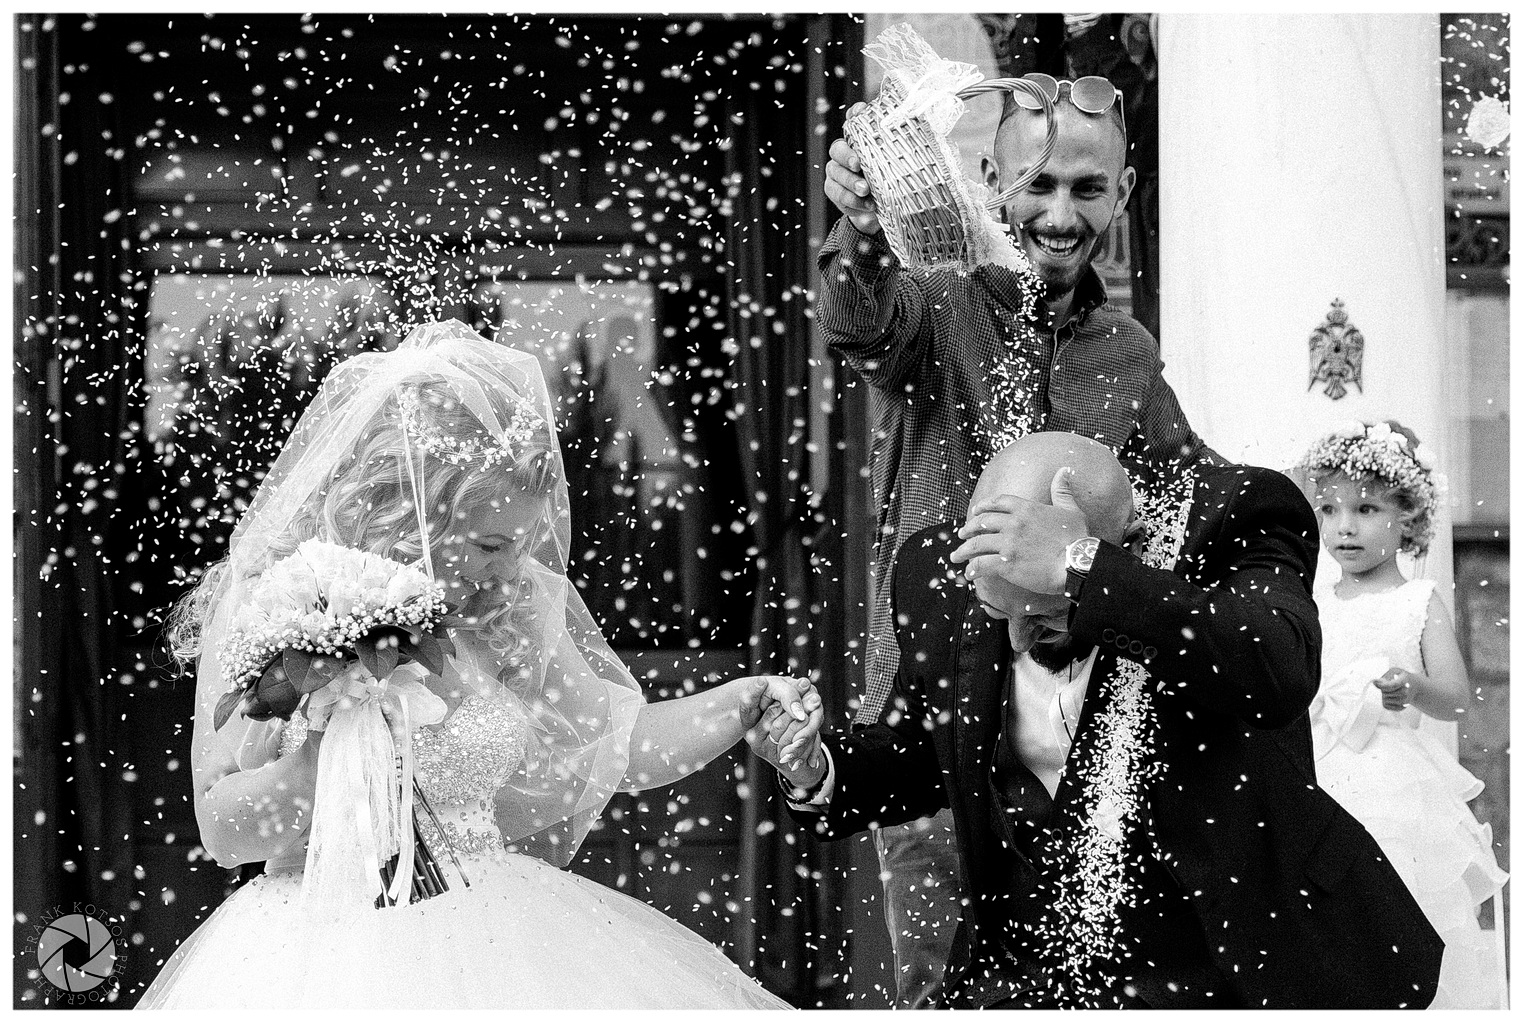 φωτογράφιση γάμου, φωτογραφία γάμου φωτογράφος γάμου βάπτισης βιντεοσκόπηση γάμου